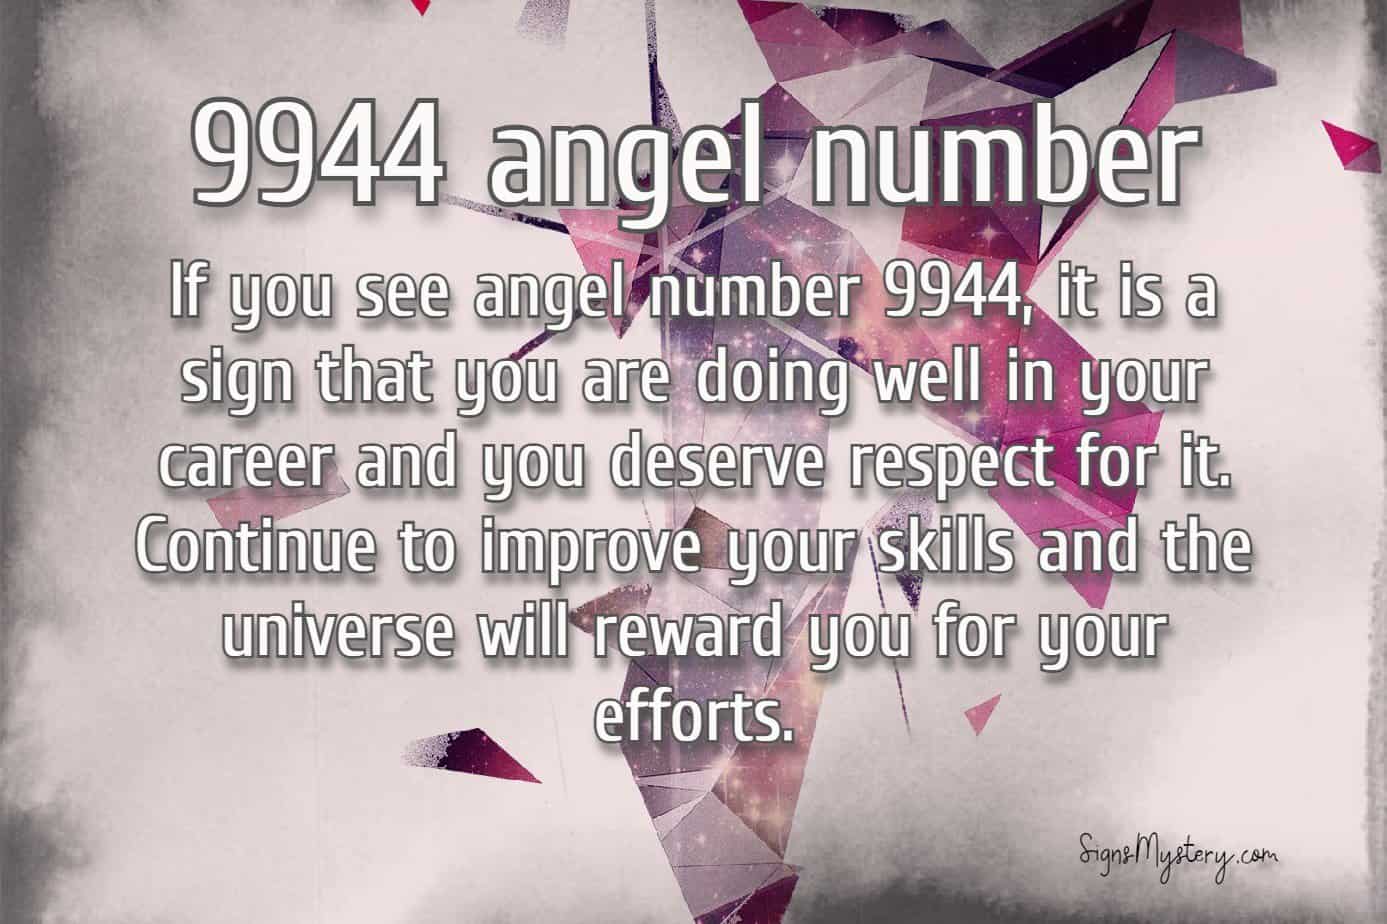 9944 angel number